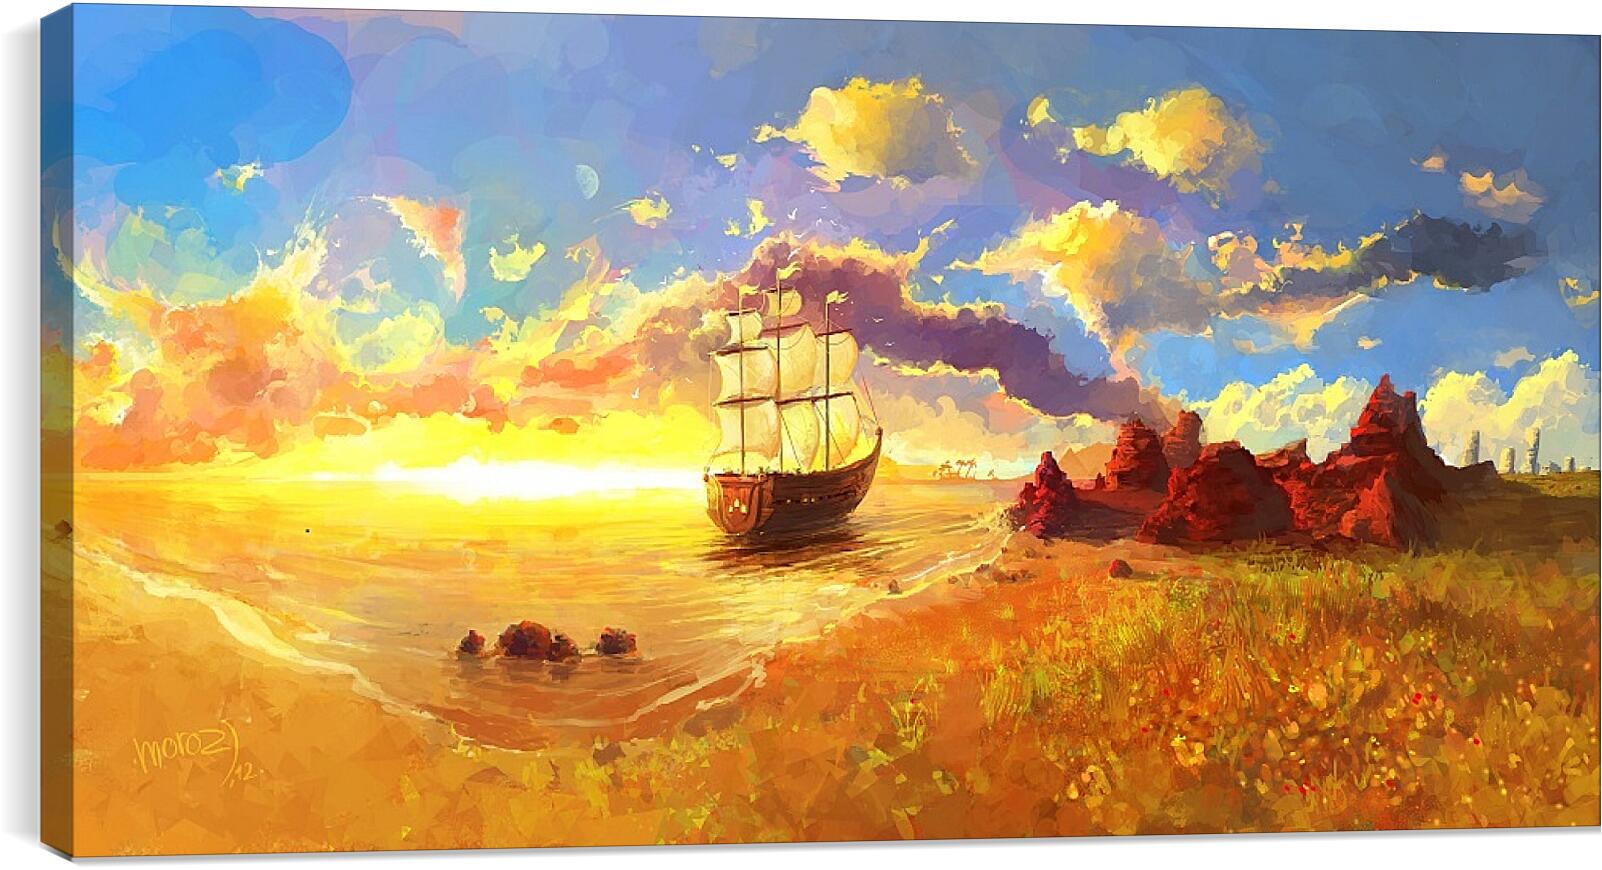 Постер и плакат - Корабль уплывает в закат